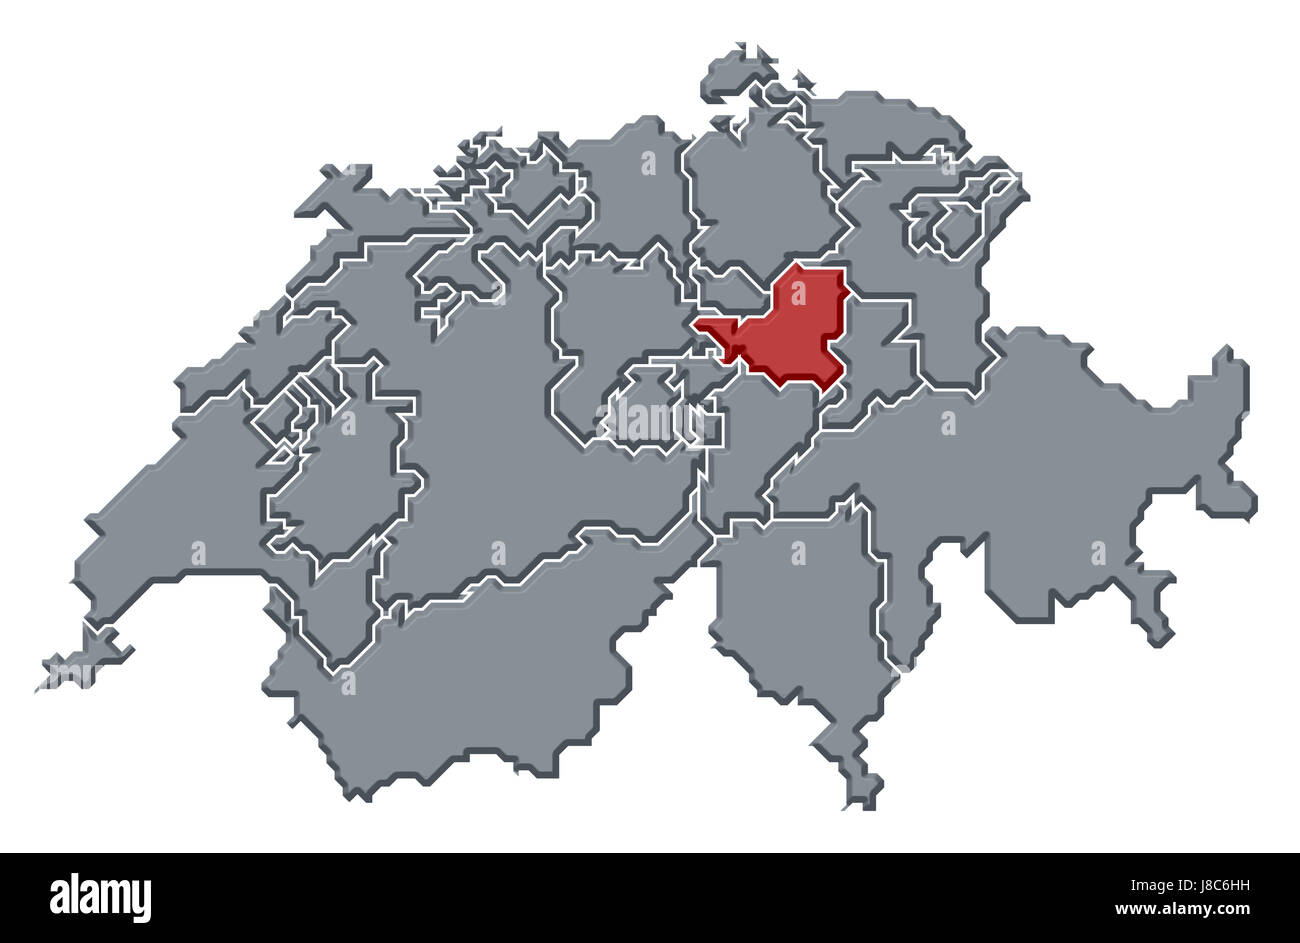 Schweiz, Karte, Atlas, Karte der Welt, Profil, symbolische und politische,  Farbe Stockfotografie - Alamy